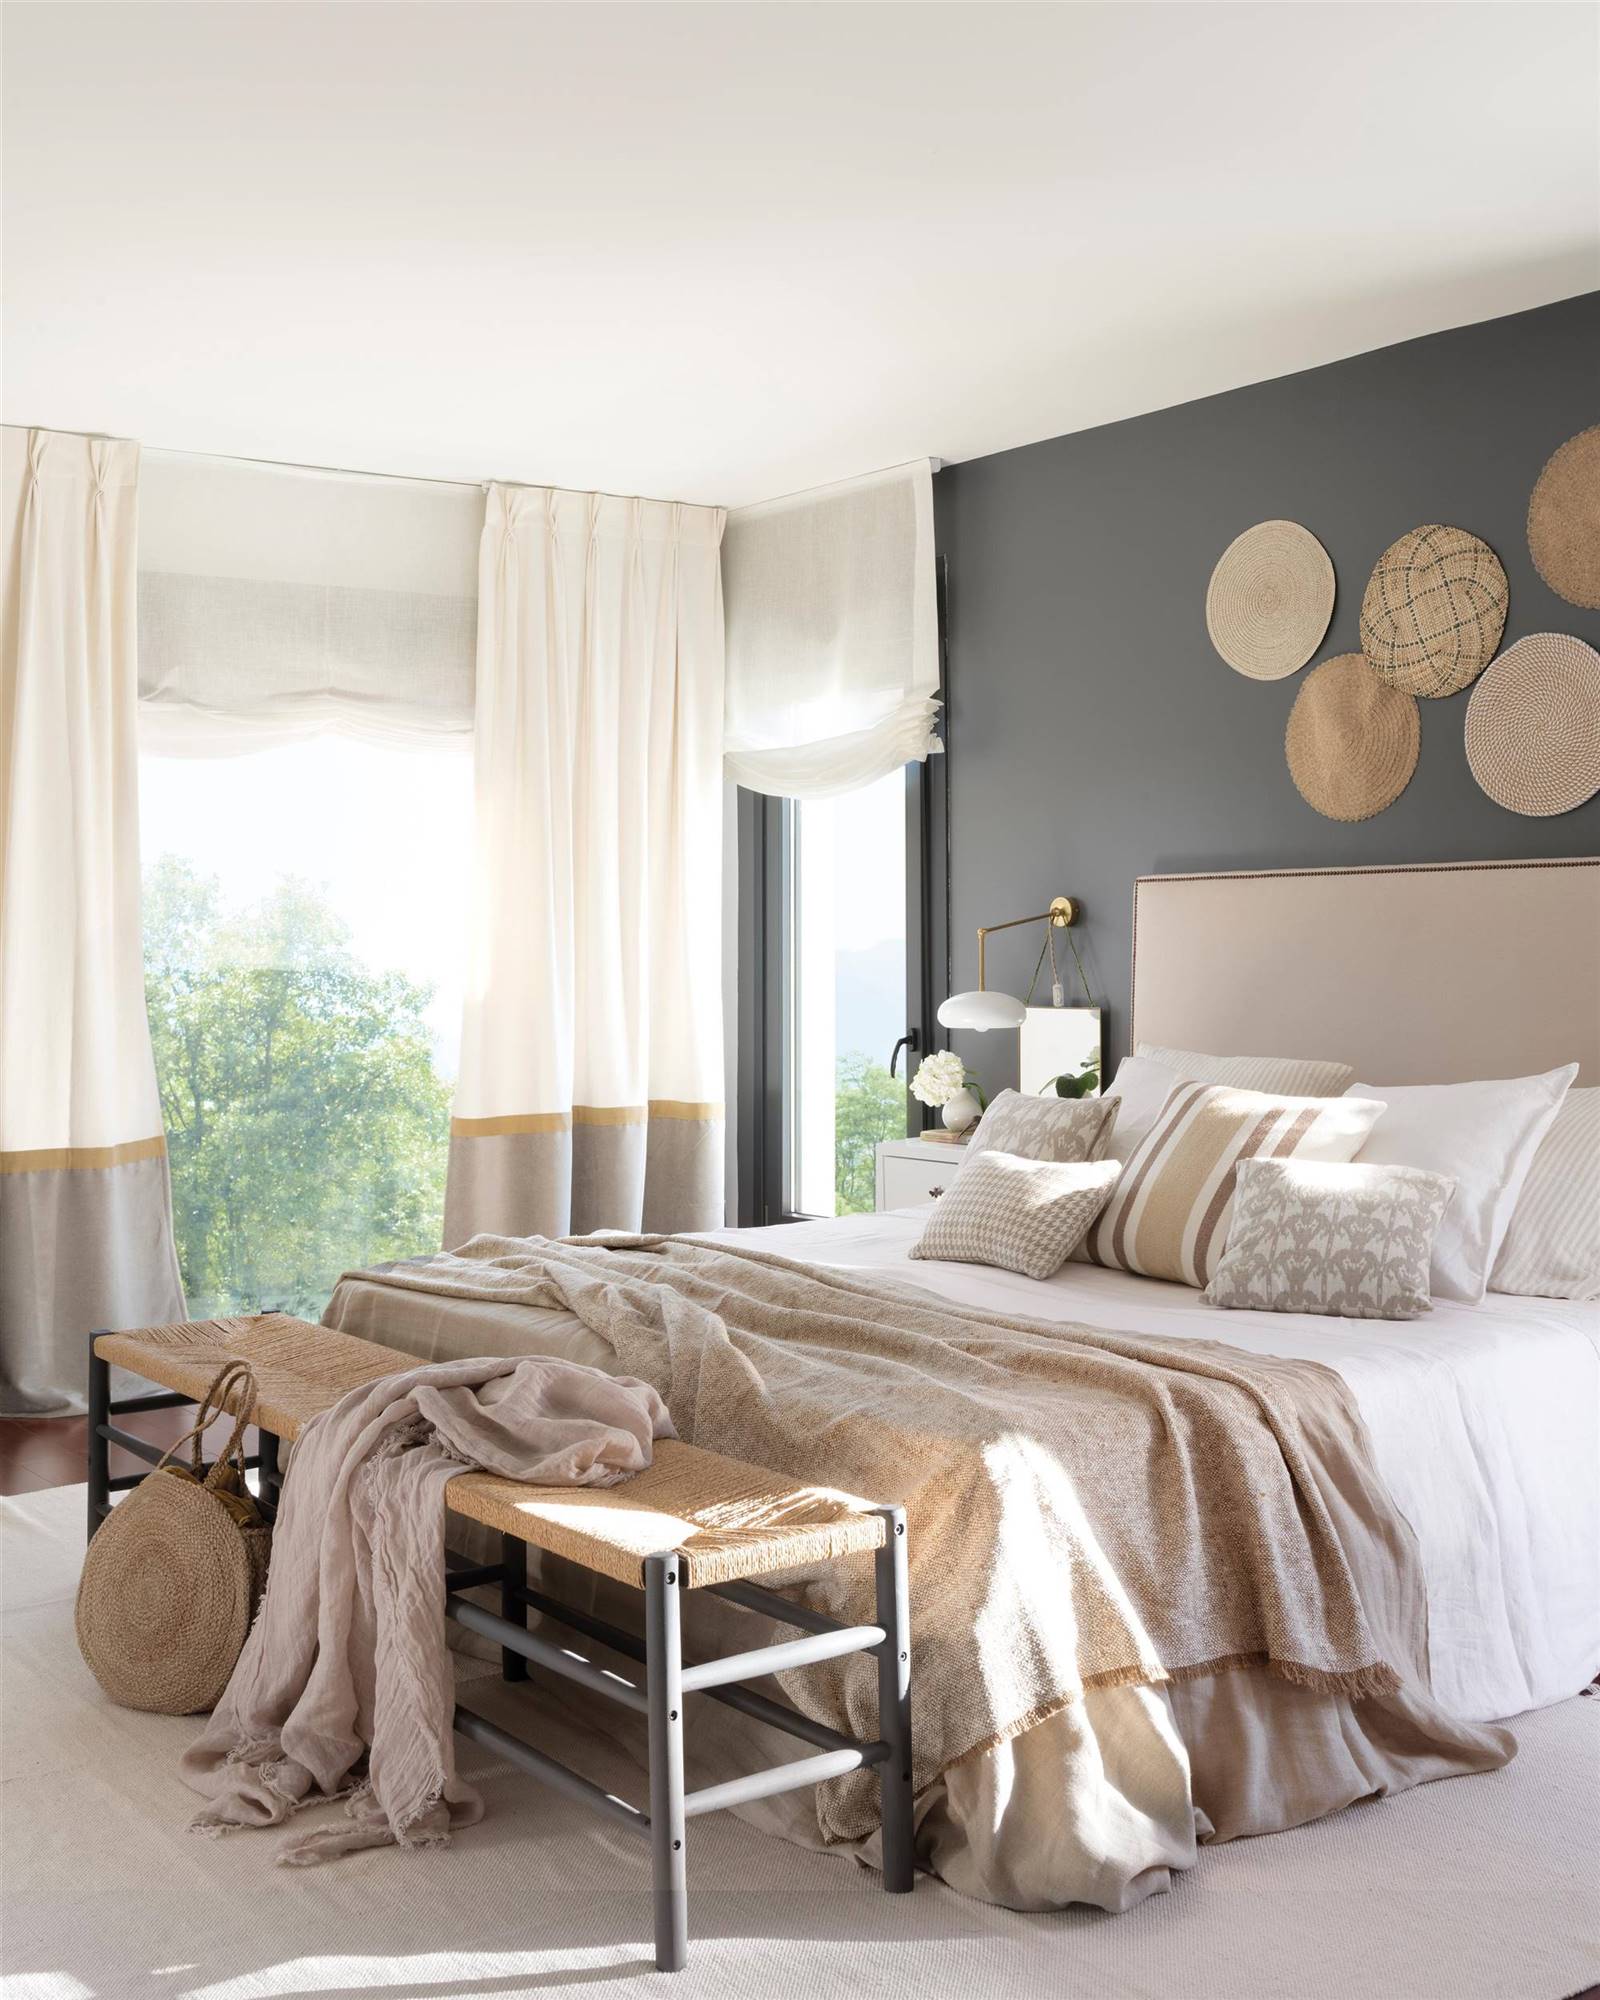 Dormitorio con pared en color gris decorada con individuales de fibras.